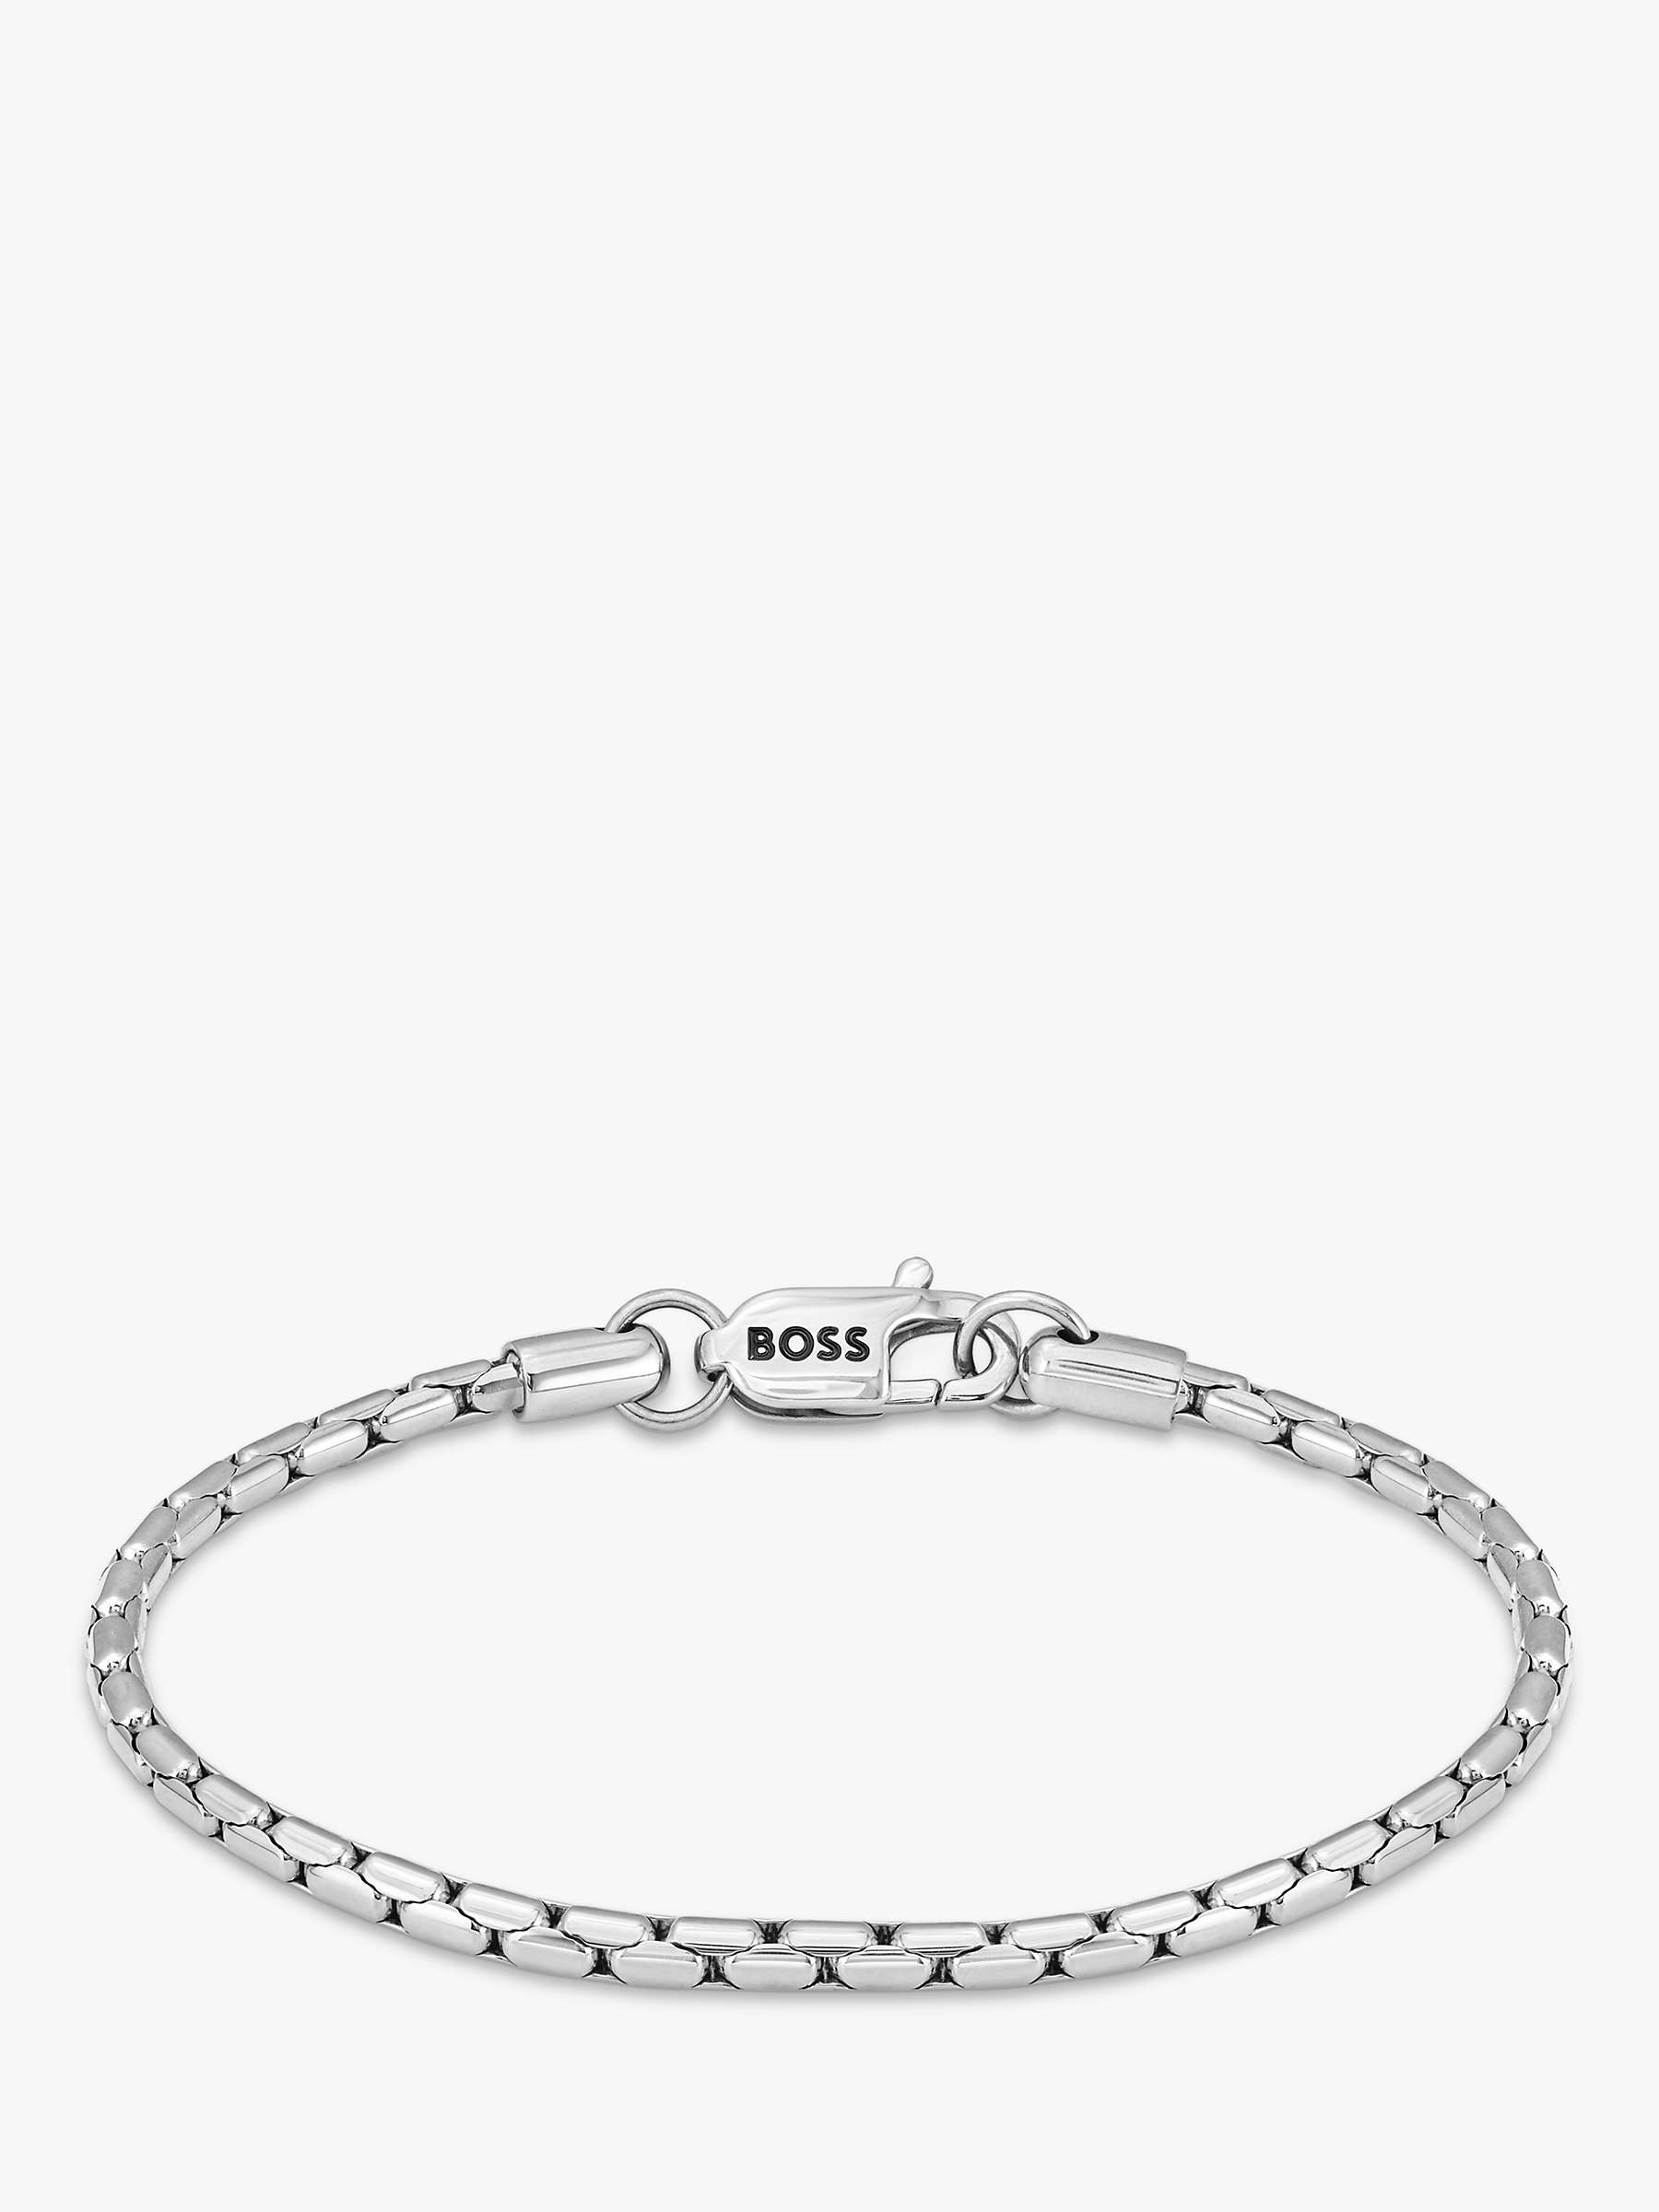 Buy HUGO BOSS Men's Evan Chain Bracelet, Silver Online at johnlewis.com